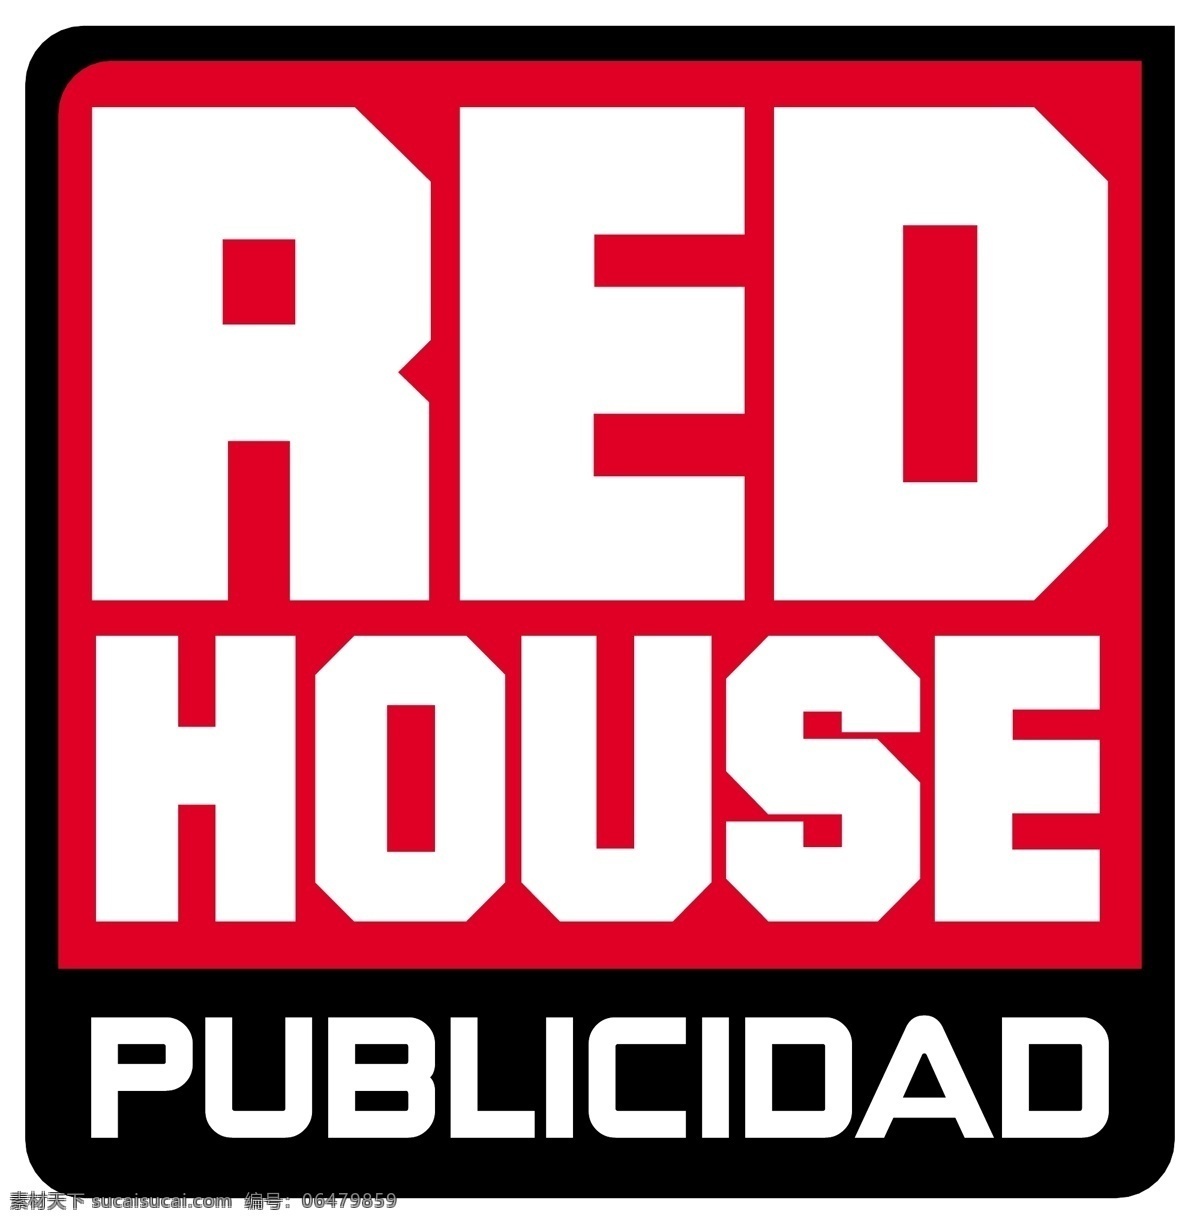 红 房子 标识 公司 免费 品牌 品牌标识 商标 矢量标志下载 免费矢量标识 矢量 psd源文件 logo设计